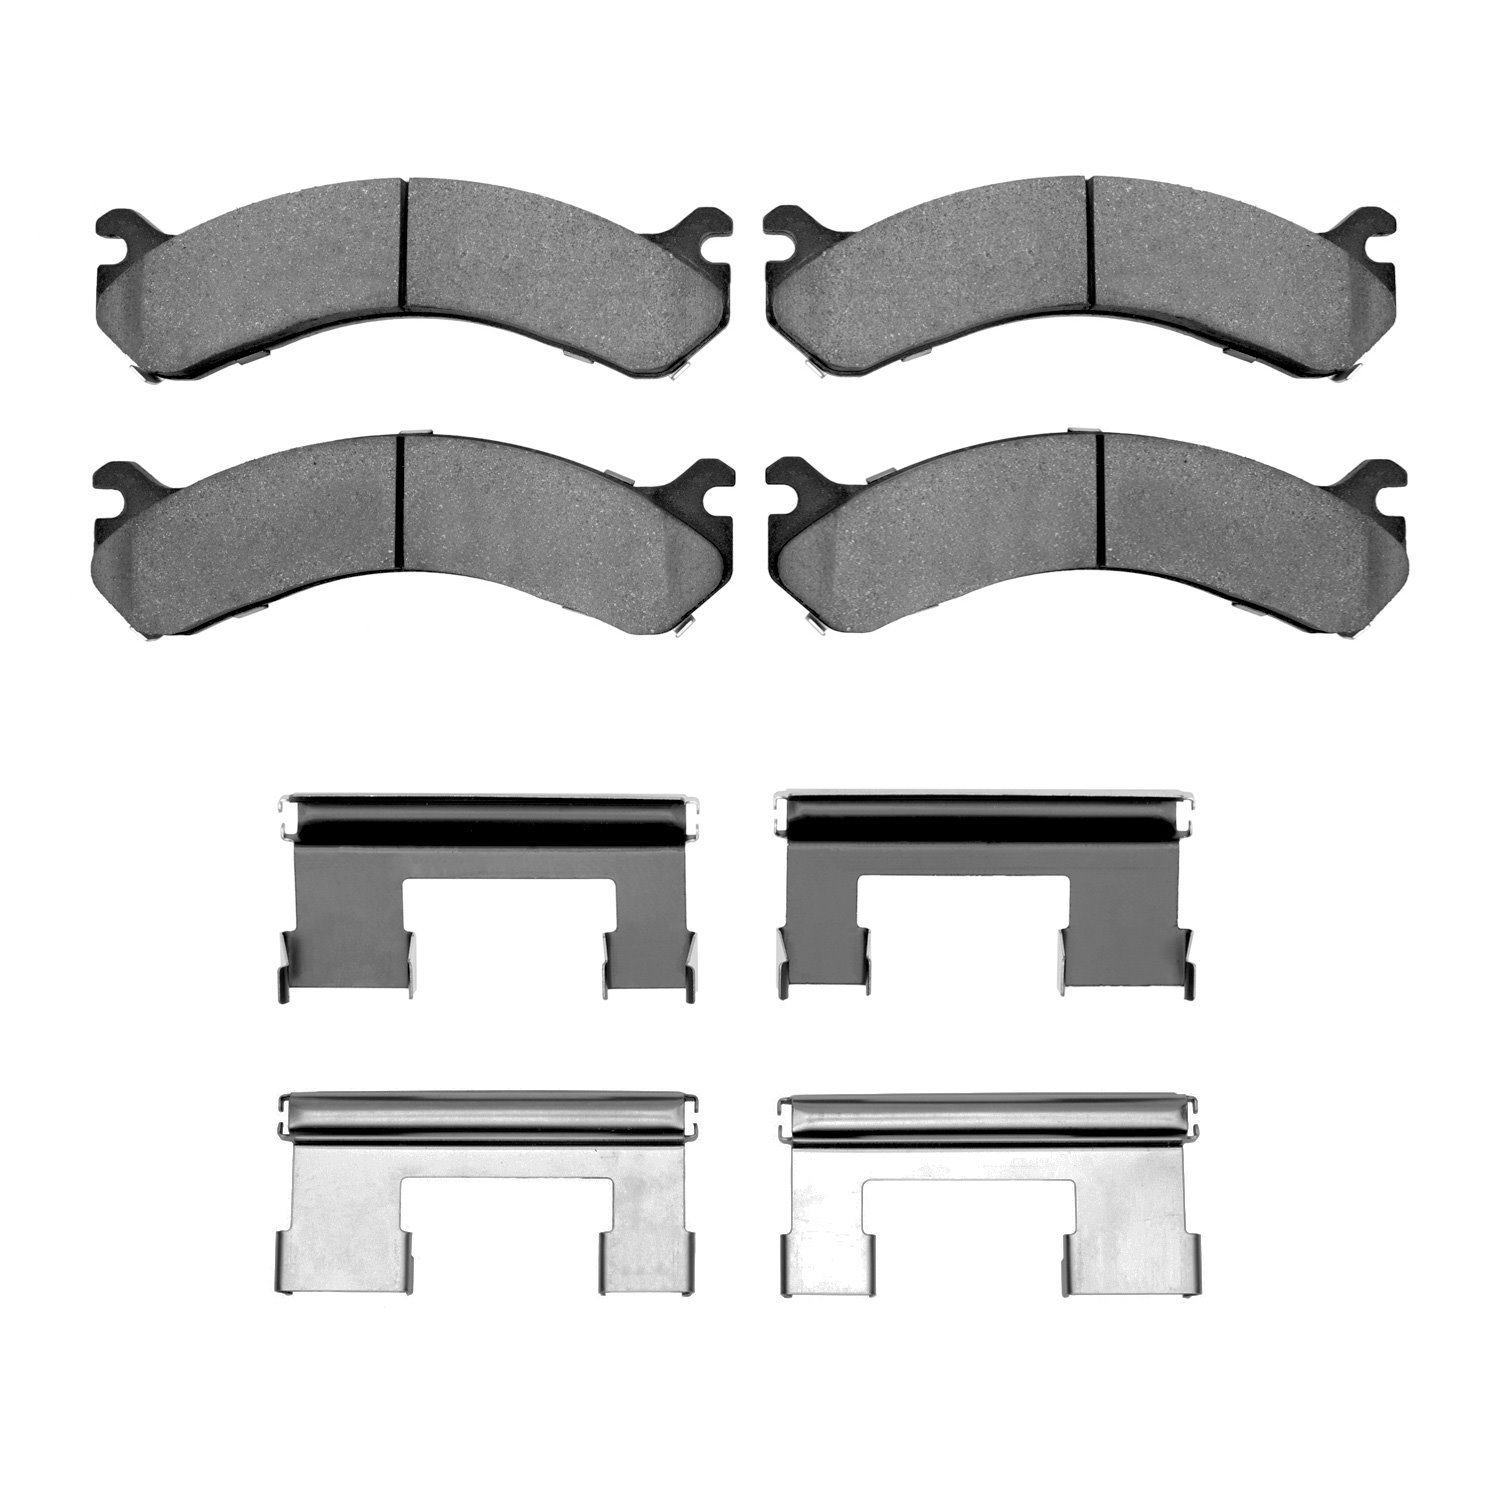 1310-0909-01 3000-Series Ceramic Brake Pads & Hardware Kit, 2001-2010 GM, Position: Rear